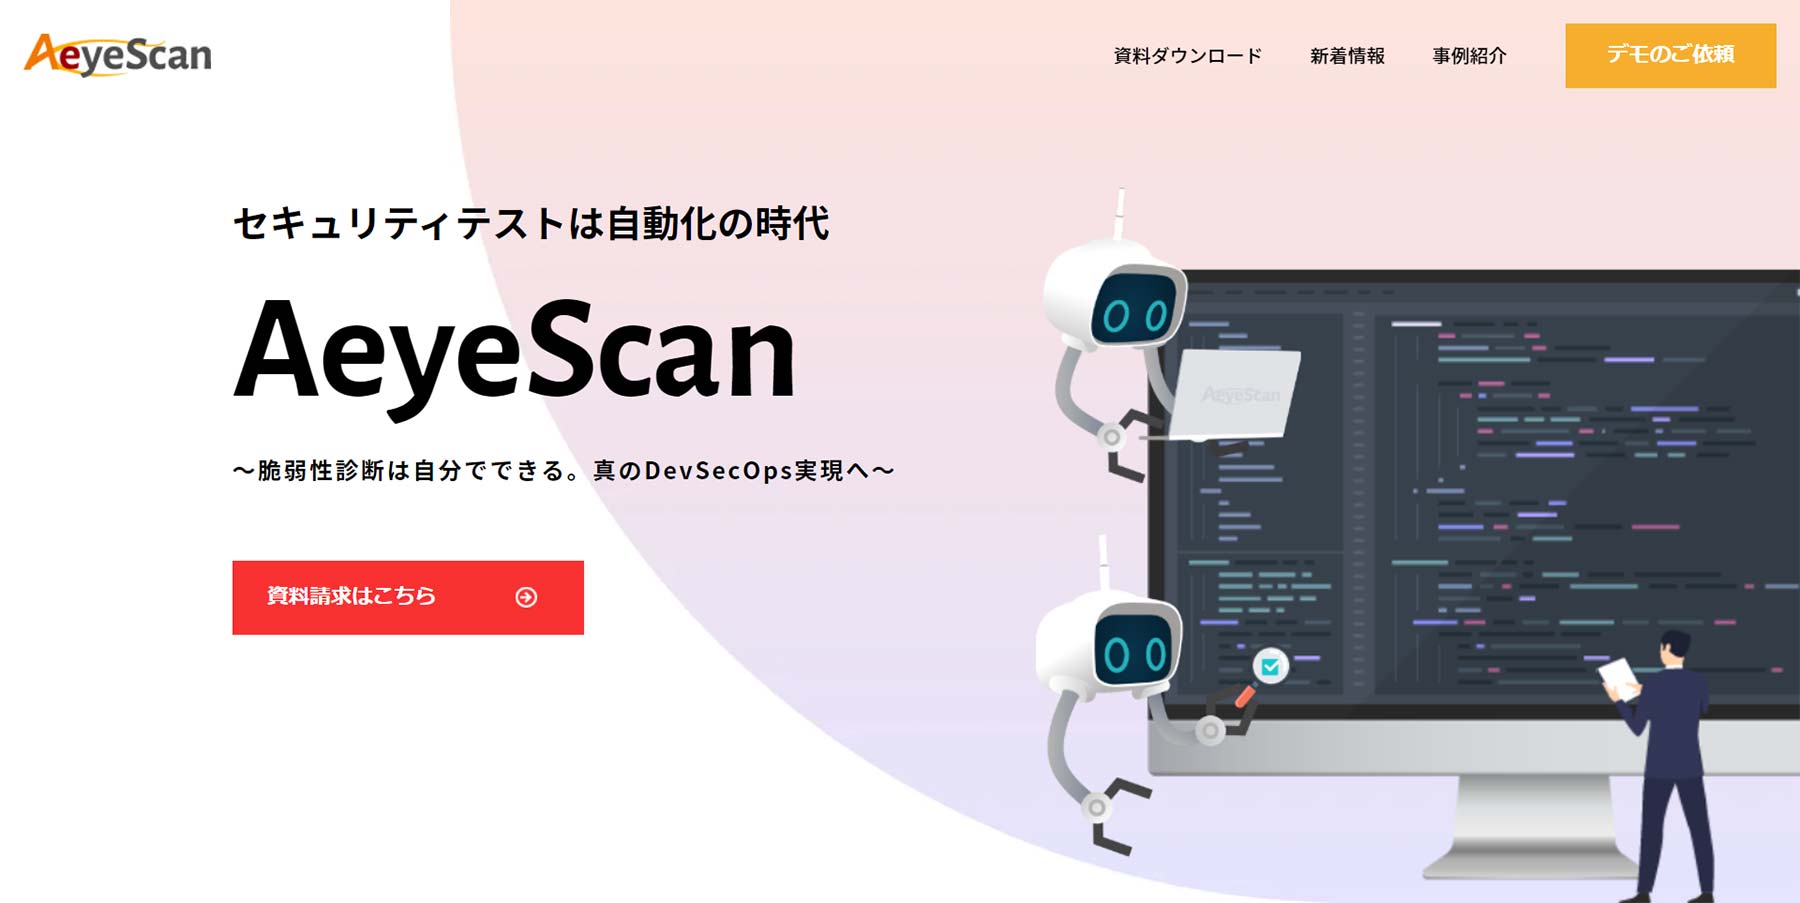 AeyeScan公式Webサイト